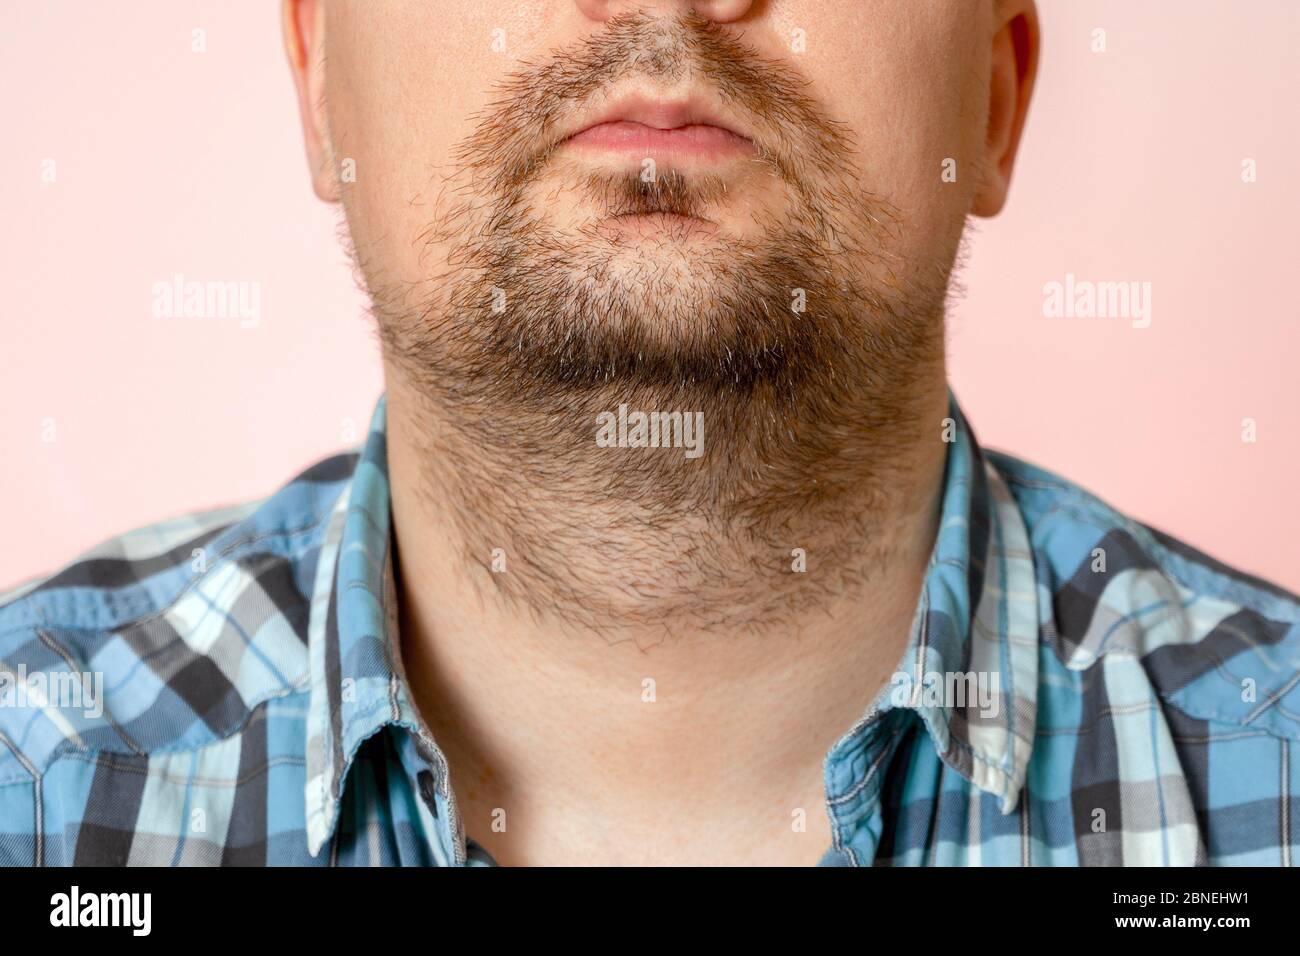 Portrait d'un jeune homme avec un chaume non formé, non taillé, surcultivé.  Cheveux sur le visage et le cou. Barbe courte Photo Stock - Alamy